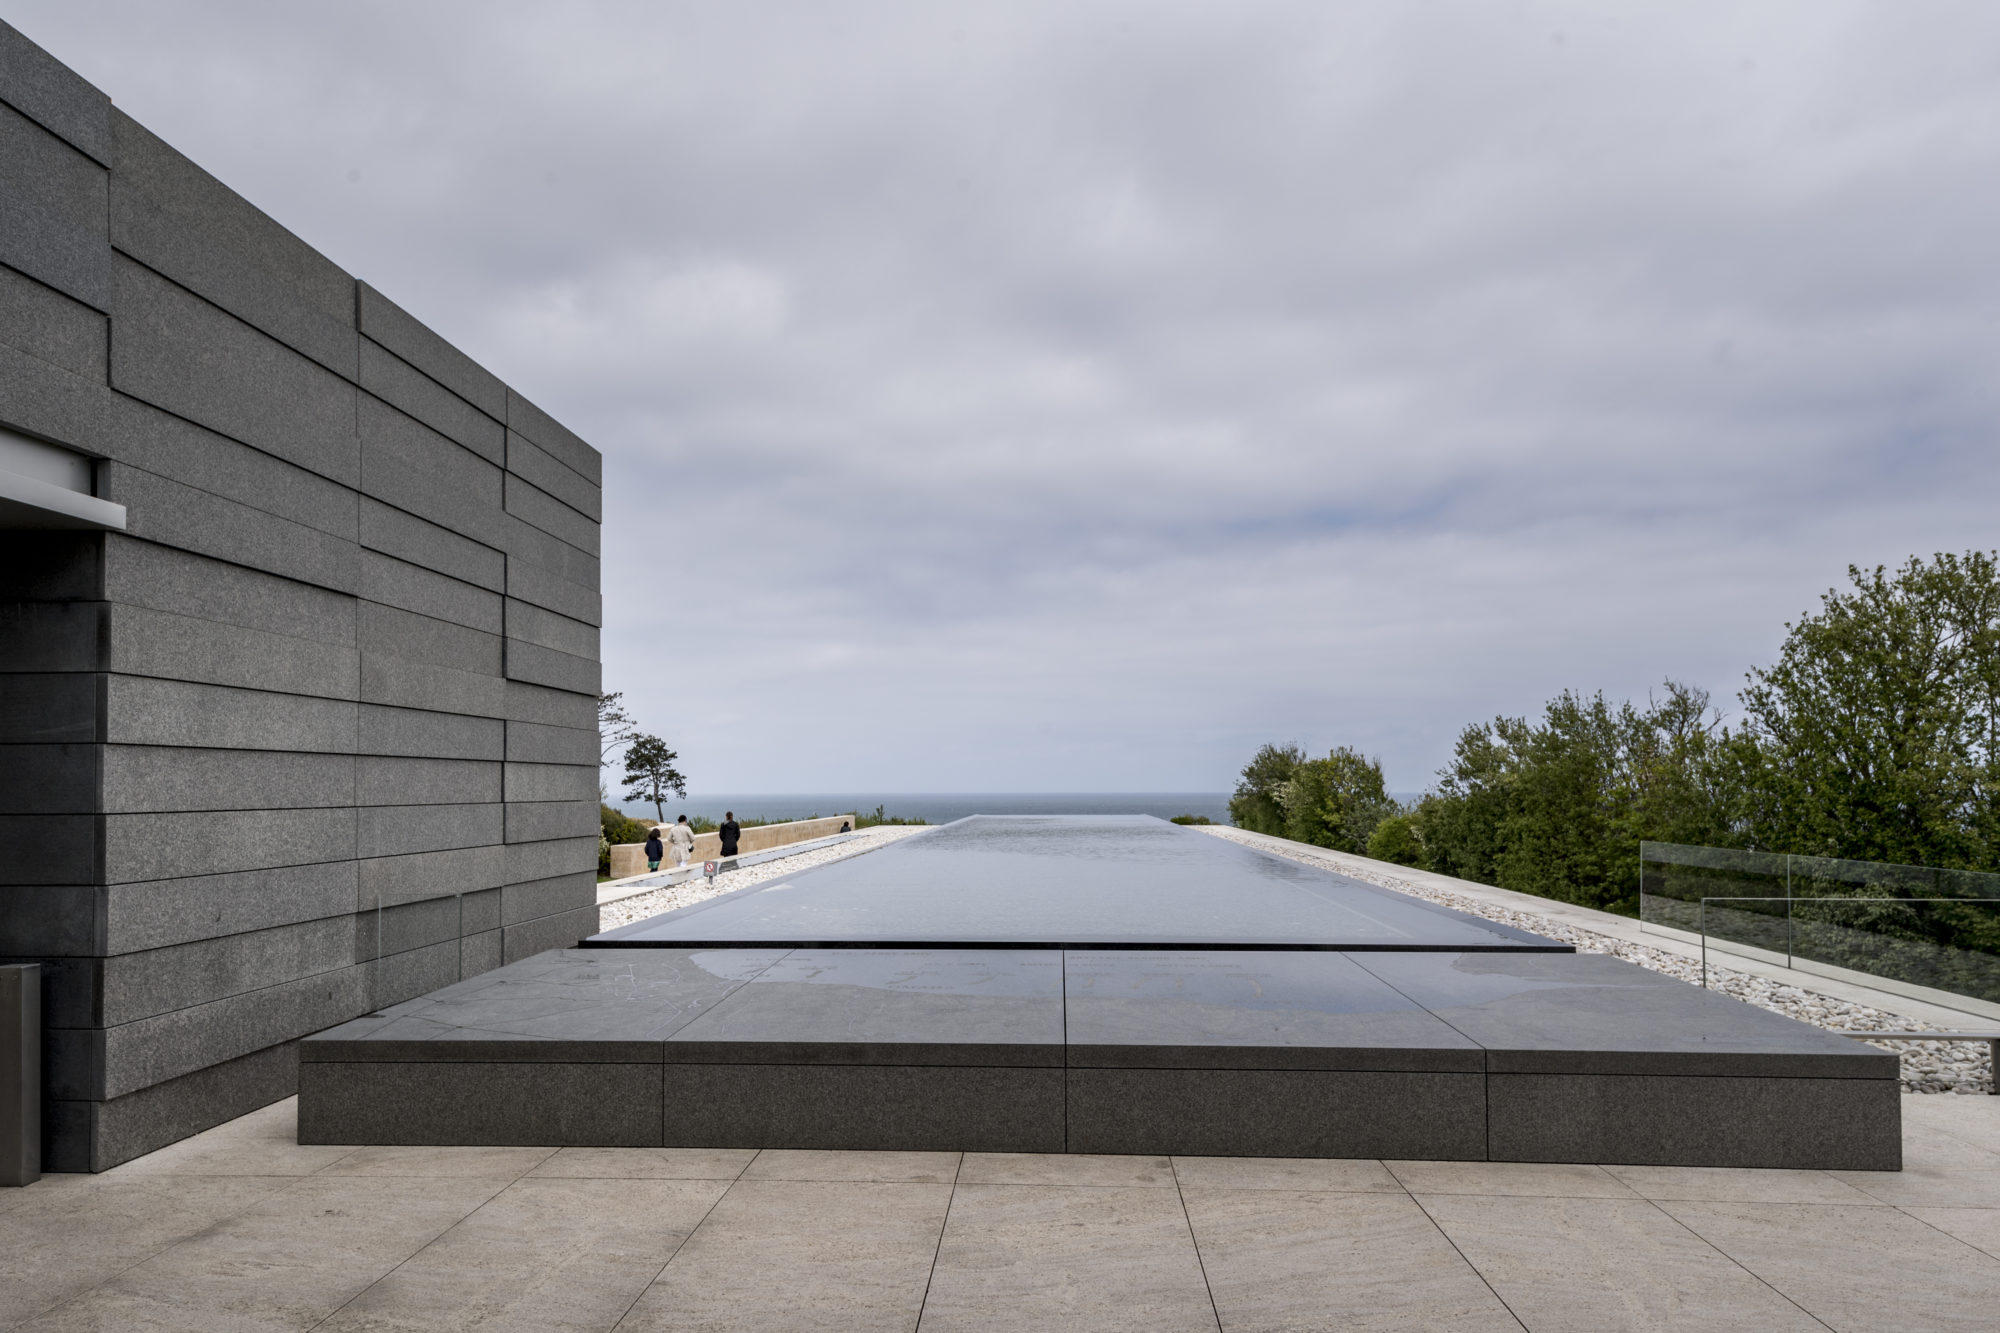 Foto di Ingresso del Cimitero e monumento alla memoria americano in Normandia